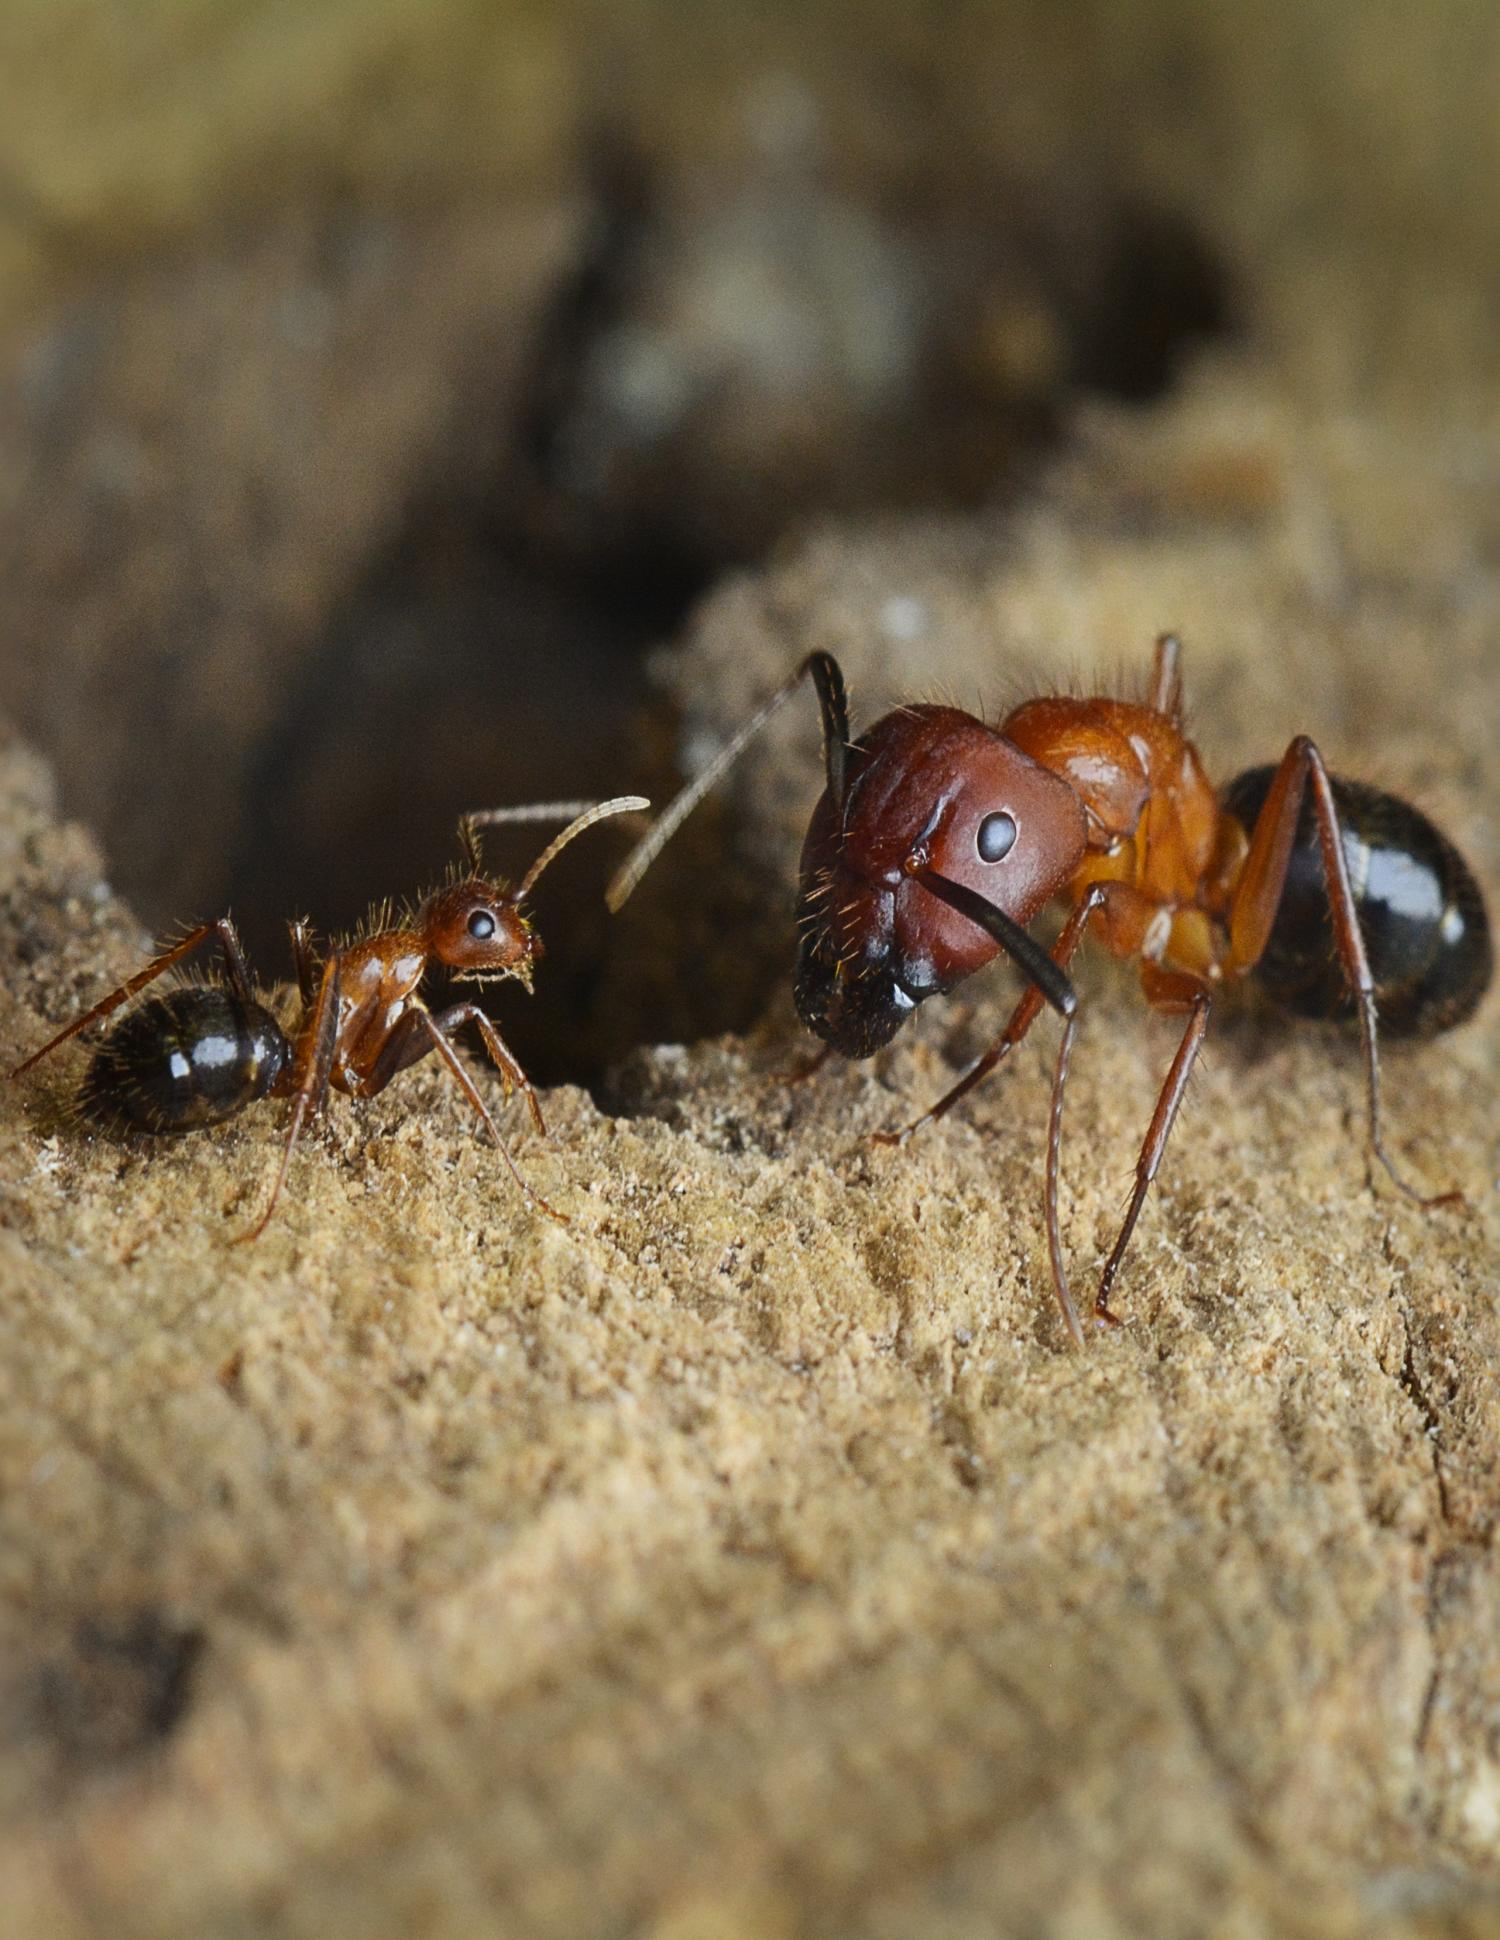 Team reprograms social behavior in carpenter ants using epigenetic drugs